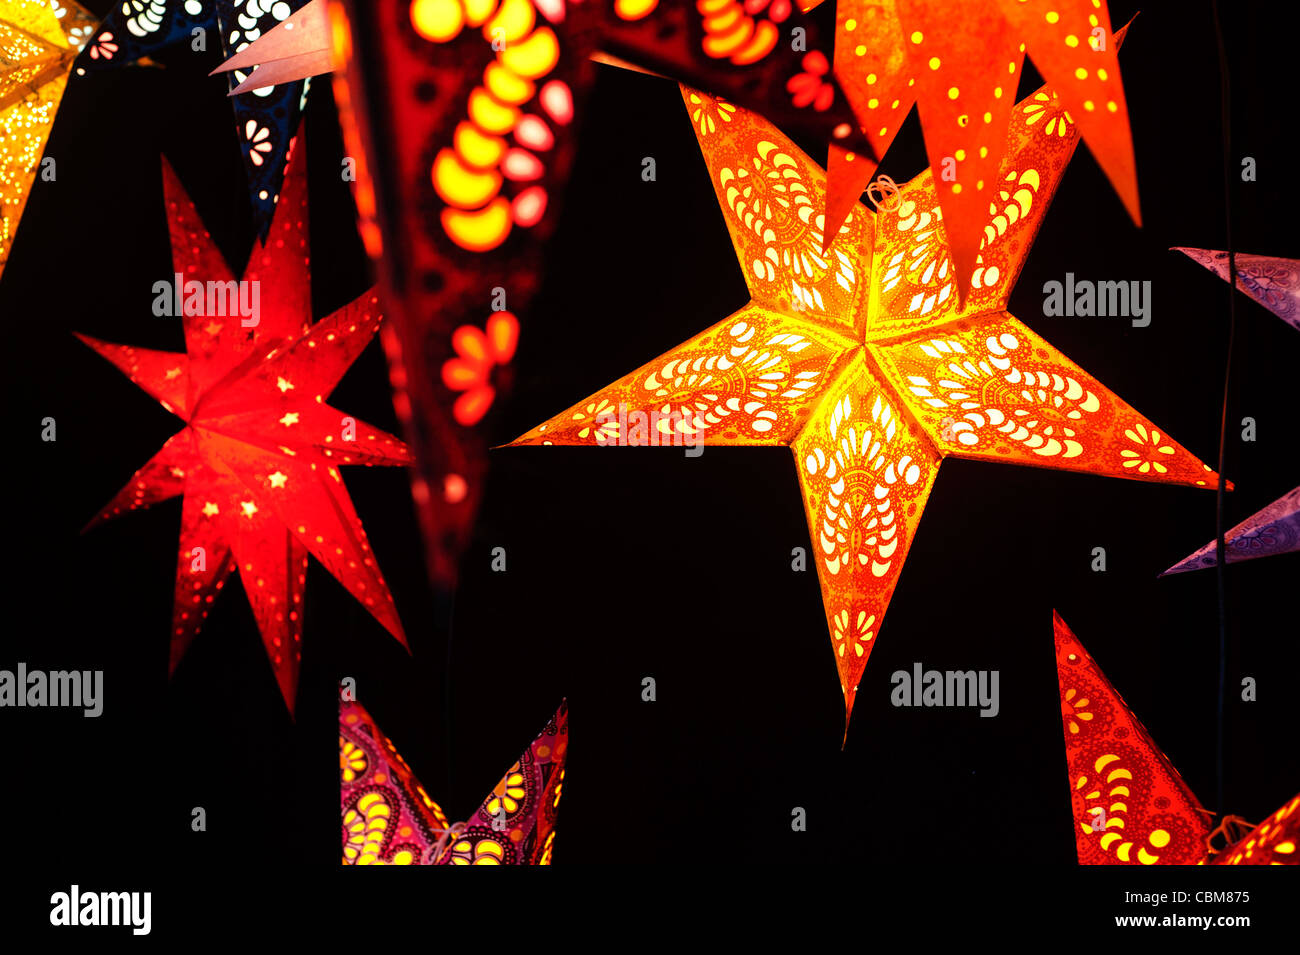 Les achats de Noël à Berlin. Papier fait main Inde stars pour vendre dans un marché de Noël. Banque D'Images